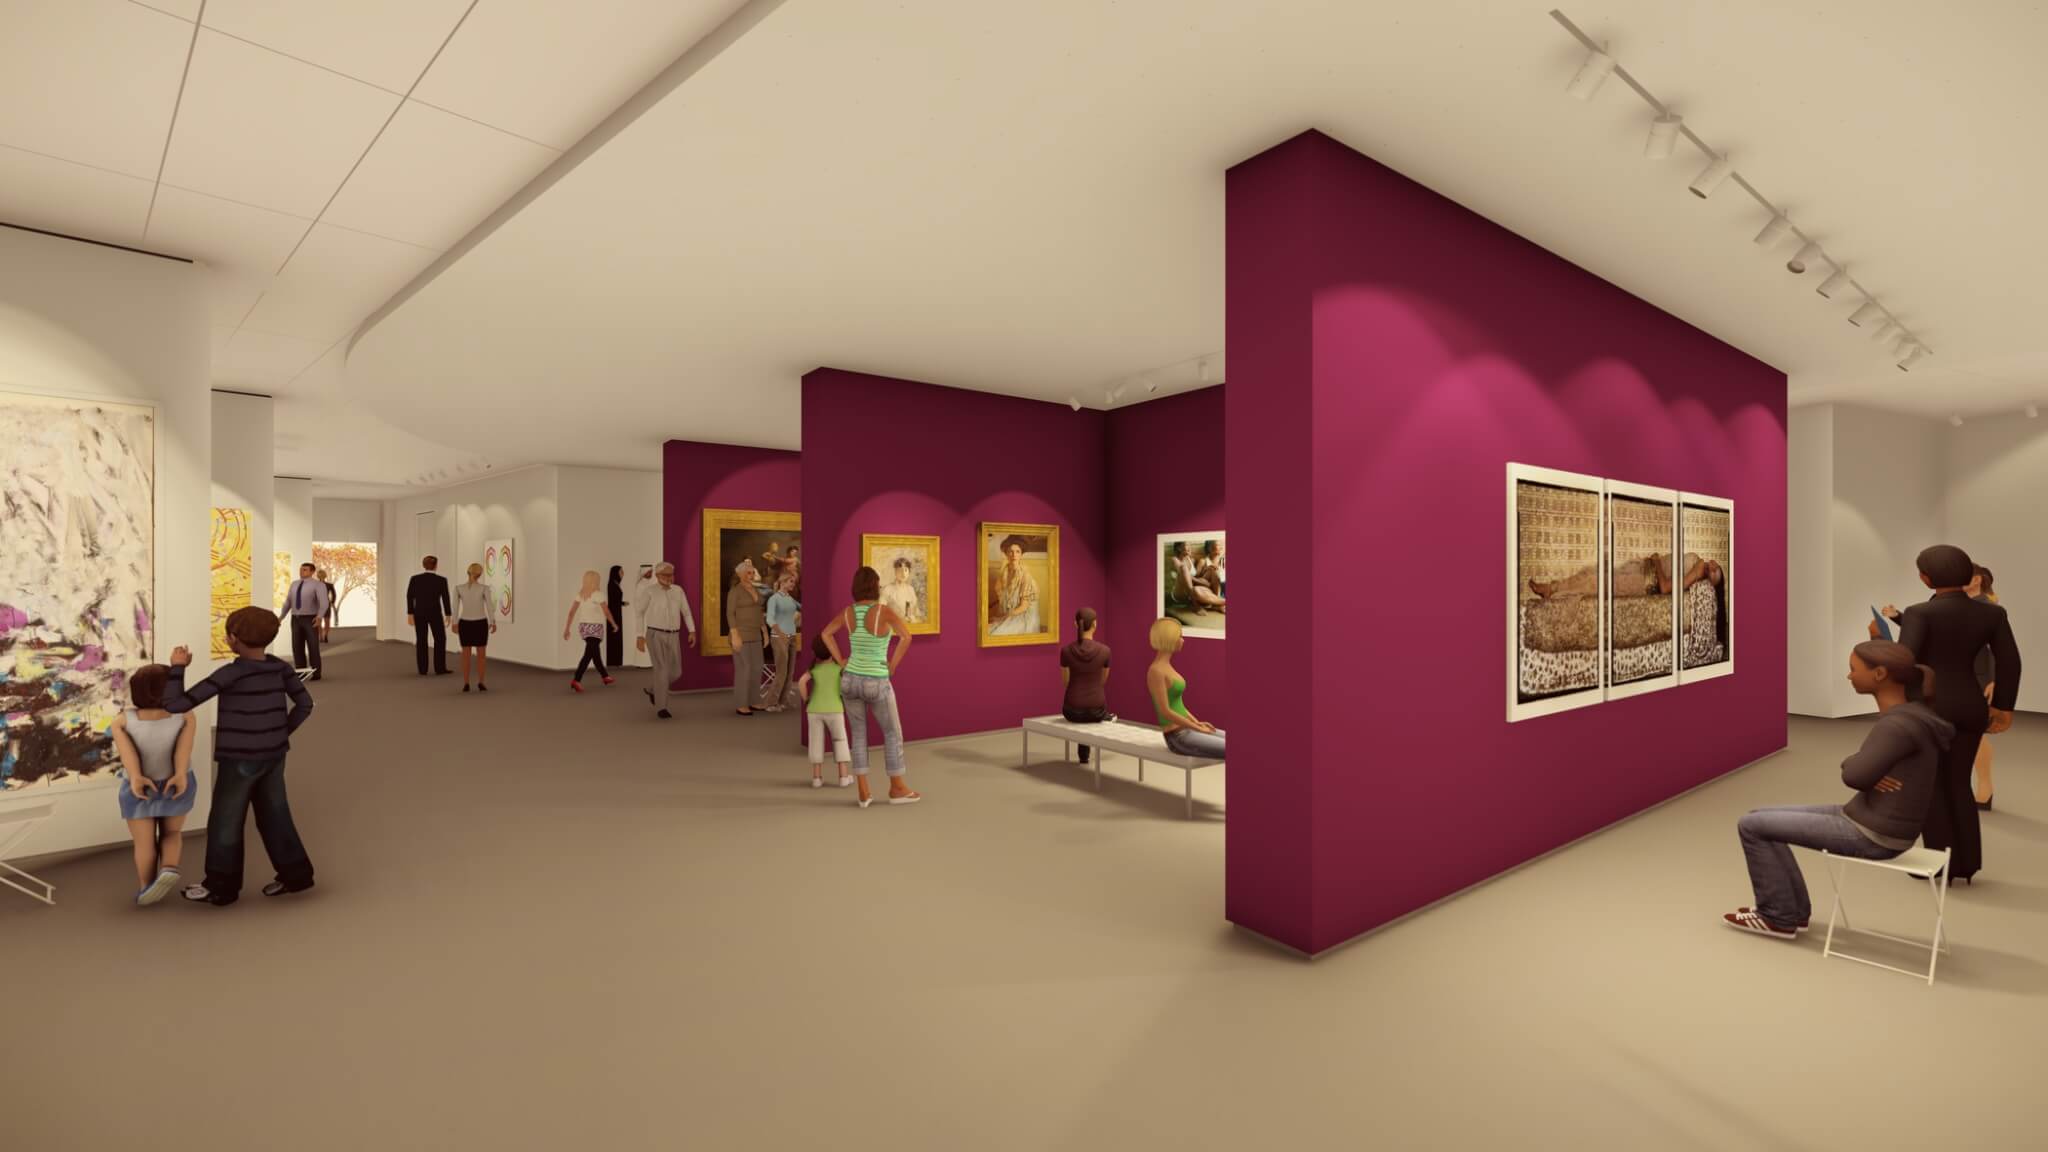 一个数字效果图显示了一个博物馆画廊空间。白色的墙壁上有抽象画;洋红色的墙壁上有印象派画作和当代照片。画廊里挤满了不同年龄和性别的客人，他们在欣赏作品和走动。